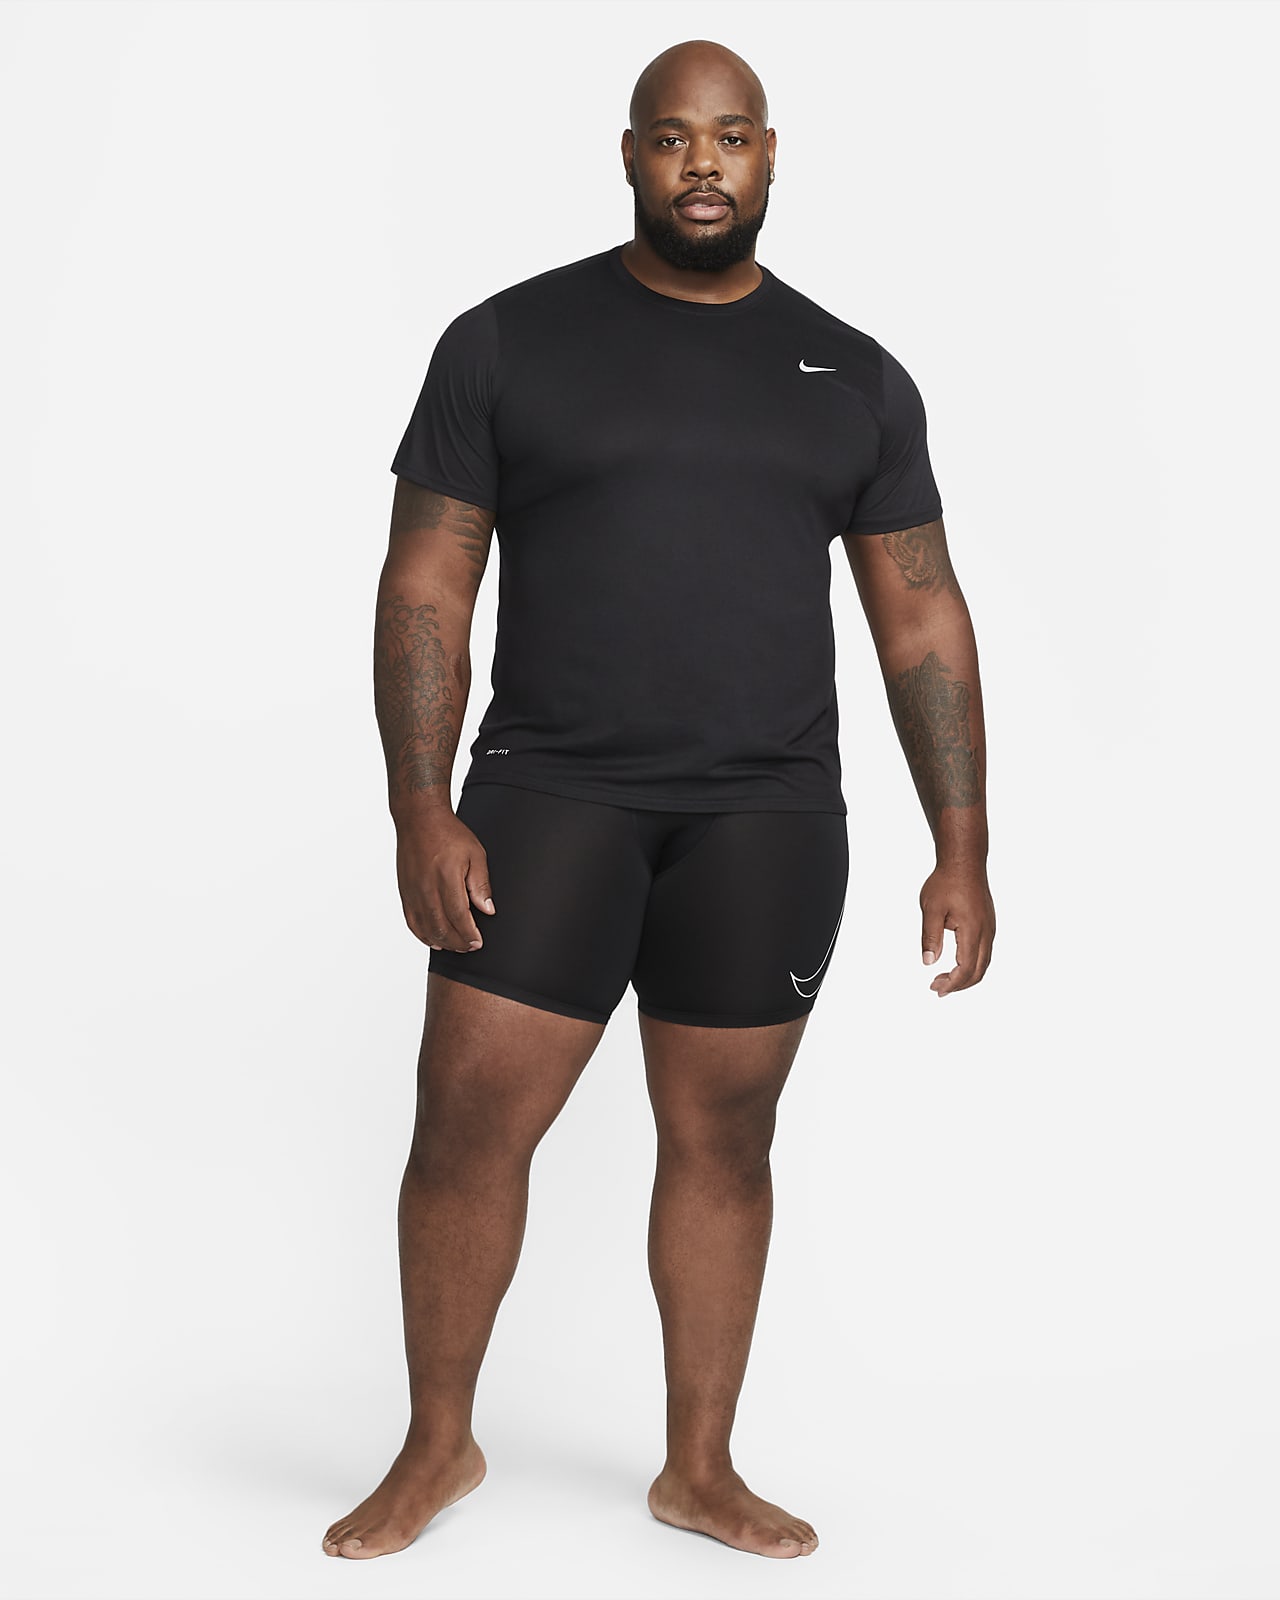 Nike Dri-FIT Pro Mallas Cortas de Tenis Hombre - Black/White